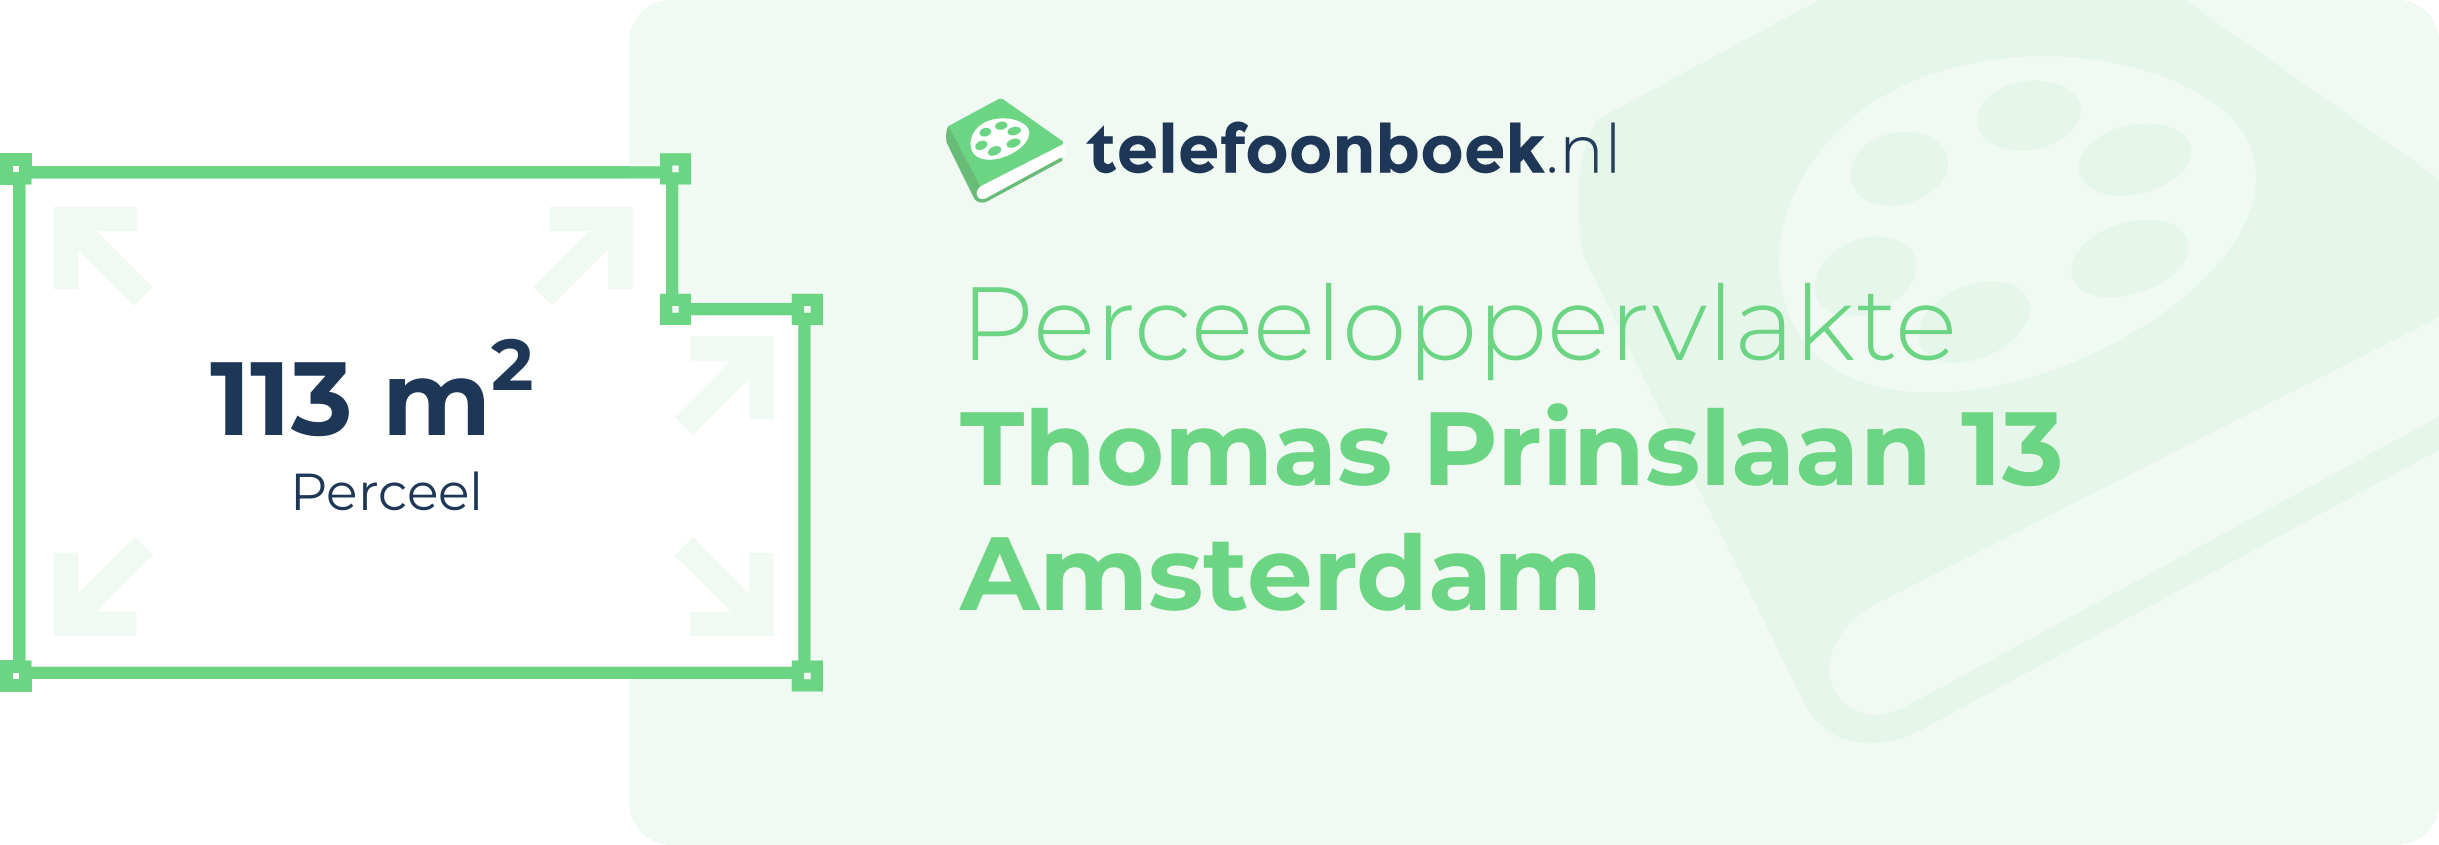 Perceeloppervlakte Thomas Prinslaan 13 Amsterdam